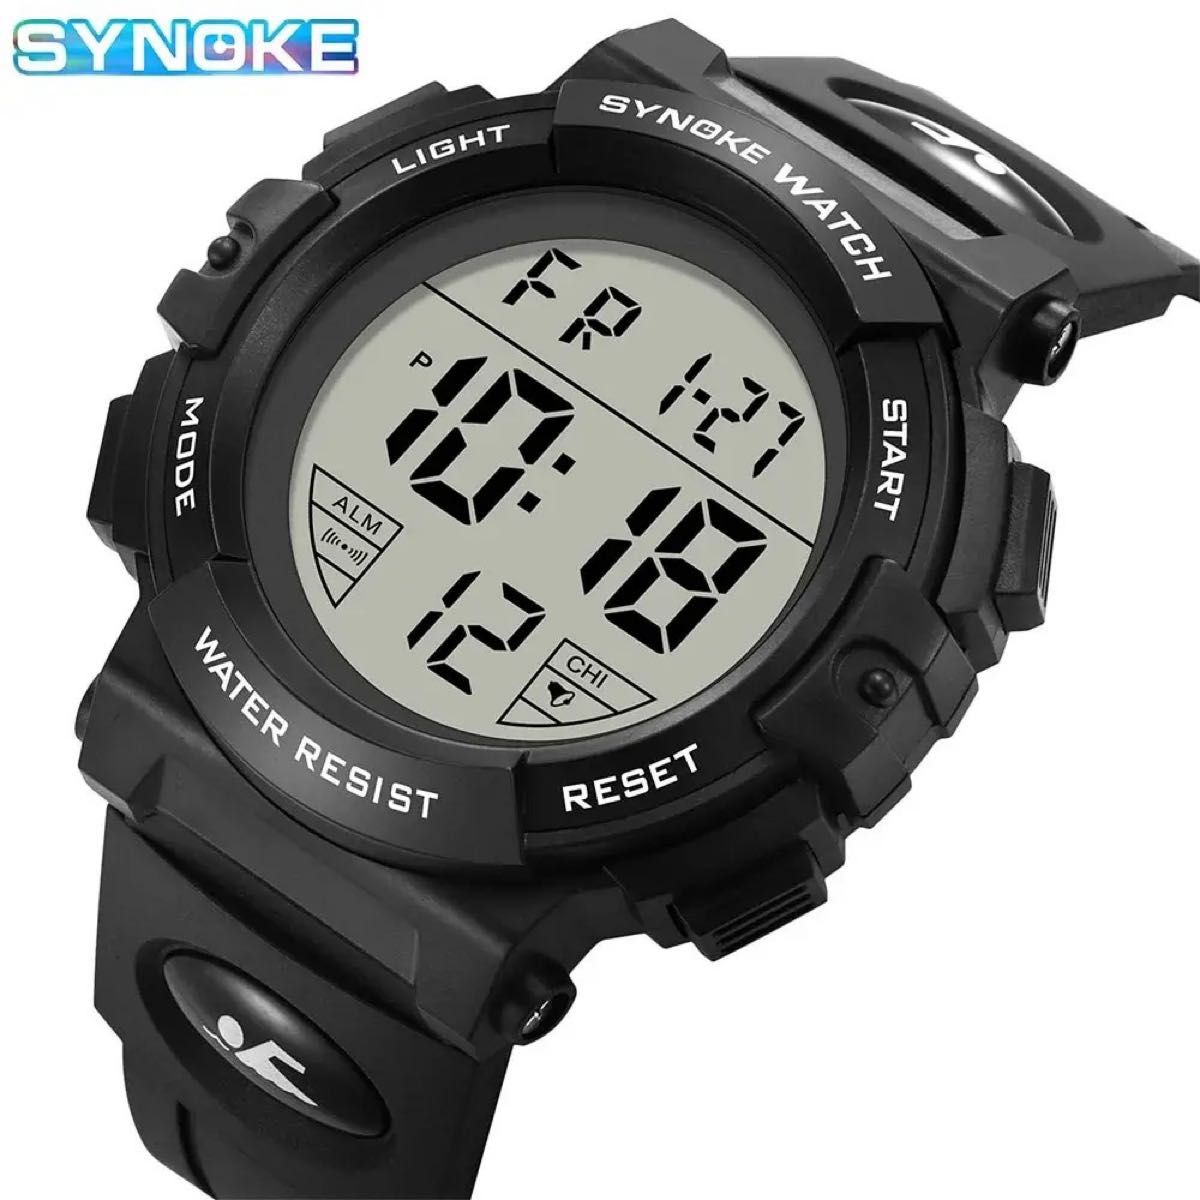 新品 SYNOKEスポーツデジタル 防水 デジタルストップウォッチ メンズ腕時計 9856 ブラック